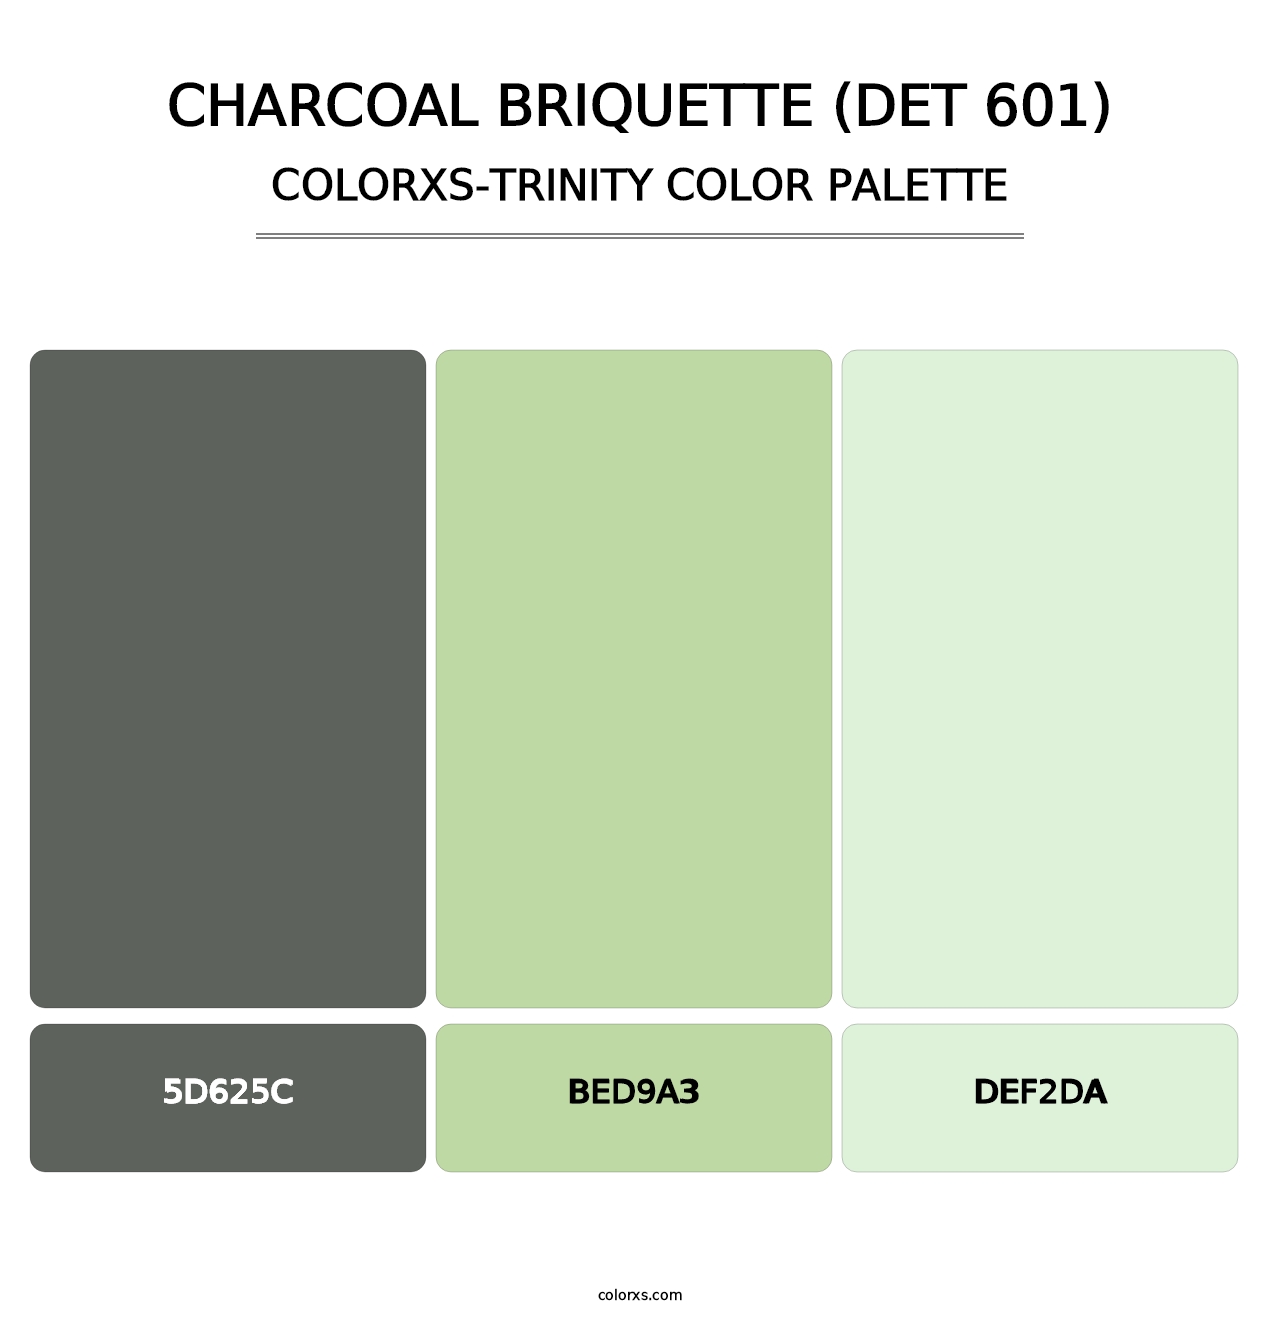 Charcoal Briquette (DET 601) - Colorxs Trinity Palette